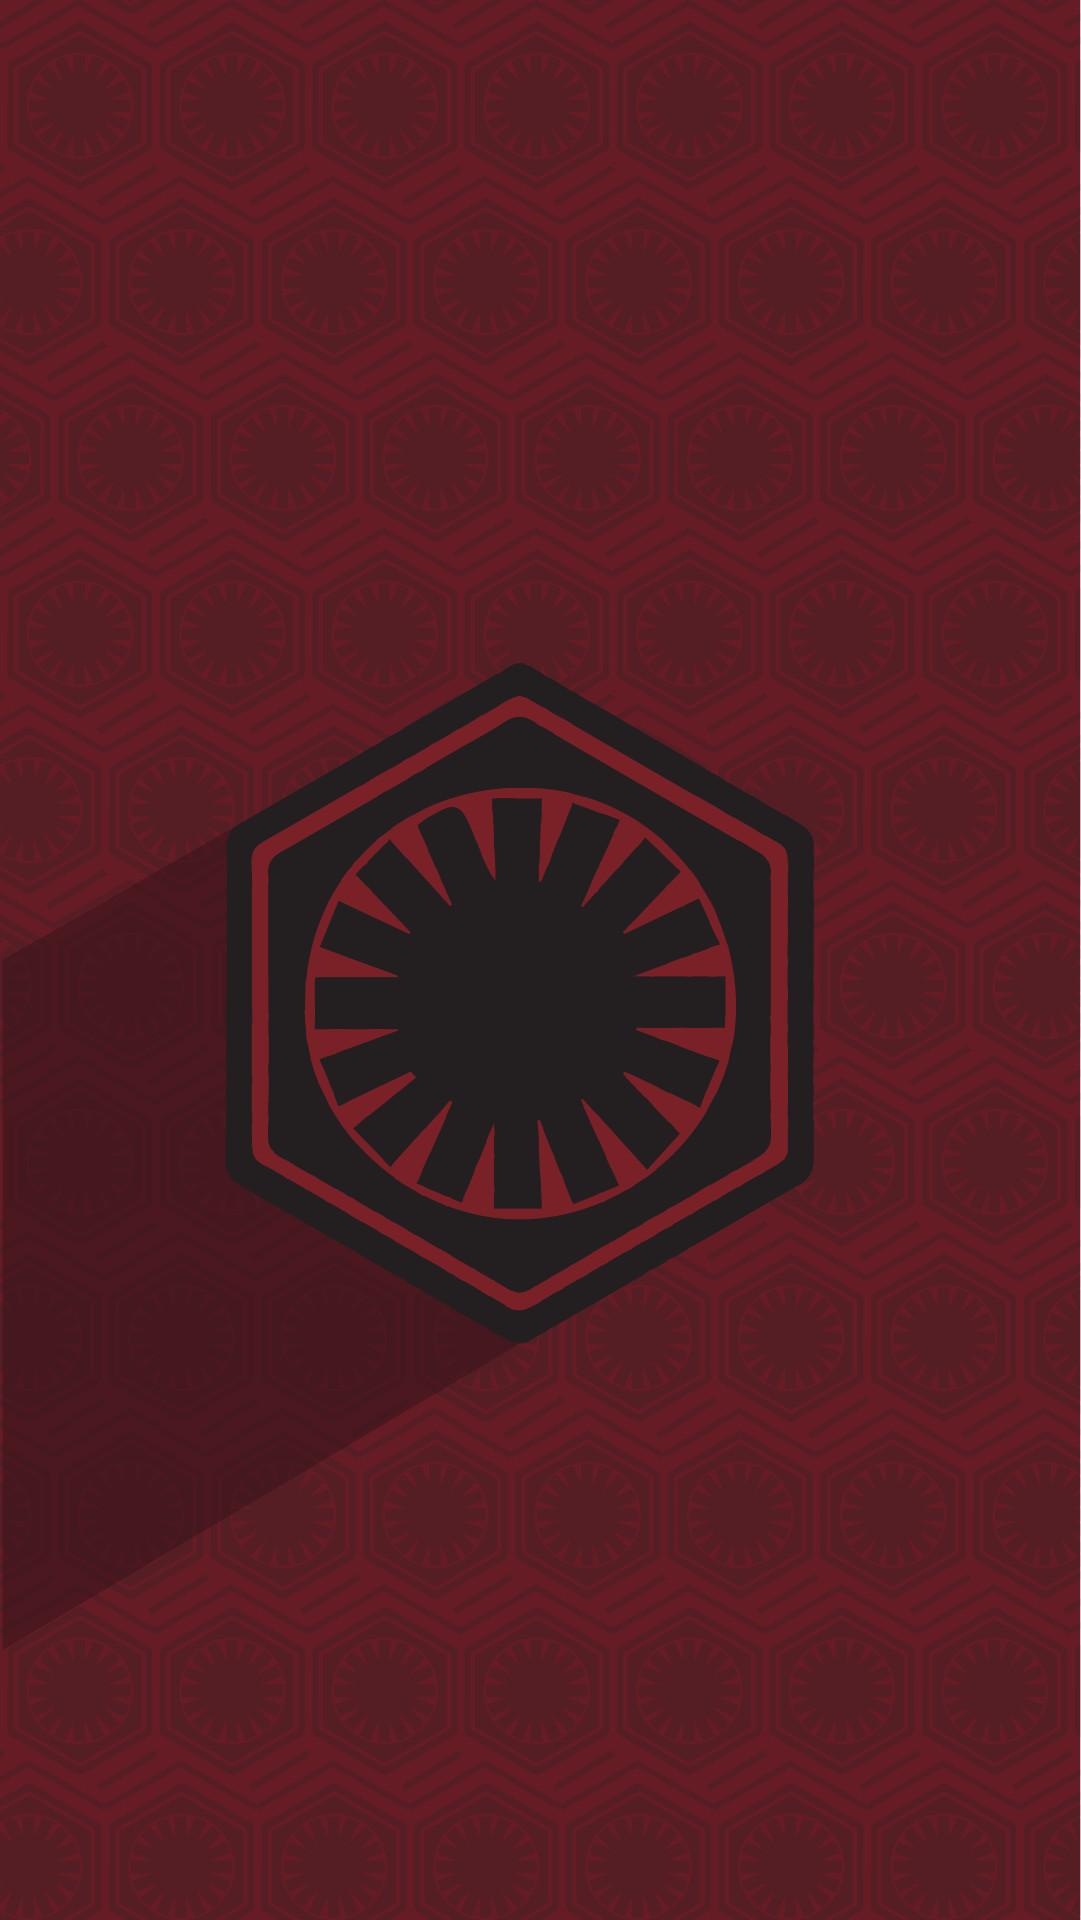 Star Wars Jedi Symbol Wallpaper